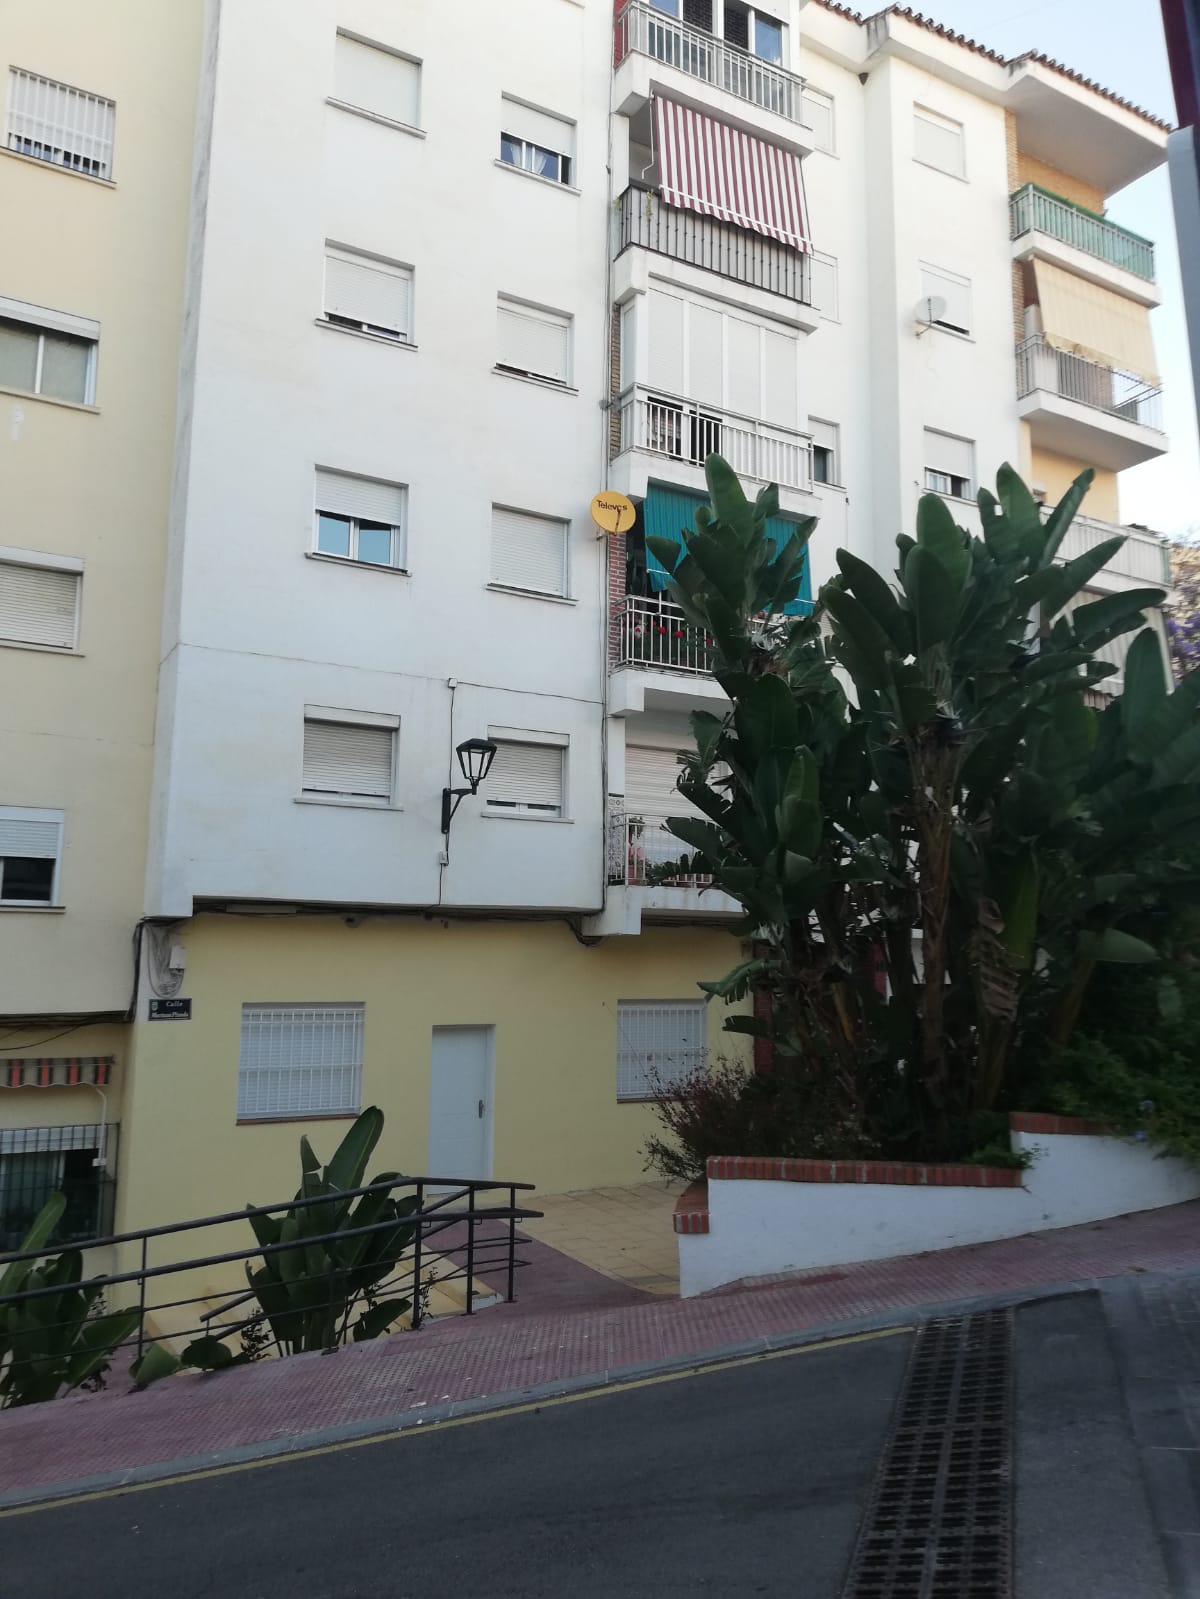 Apartamento de 3 dormitorios en venta en el centro de Estepona a 300 metros del mar. - mibgroup.es